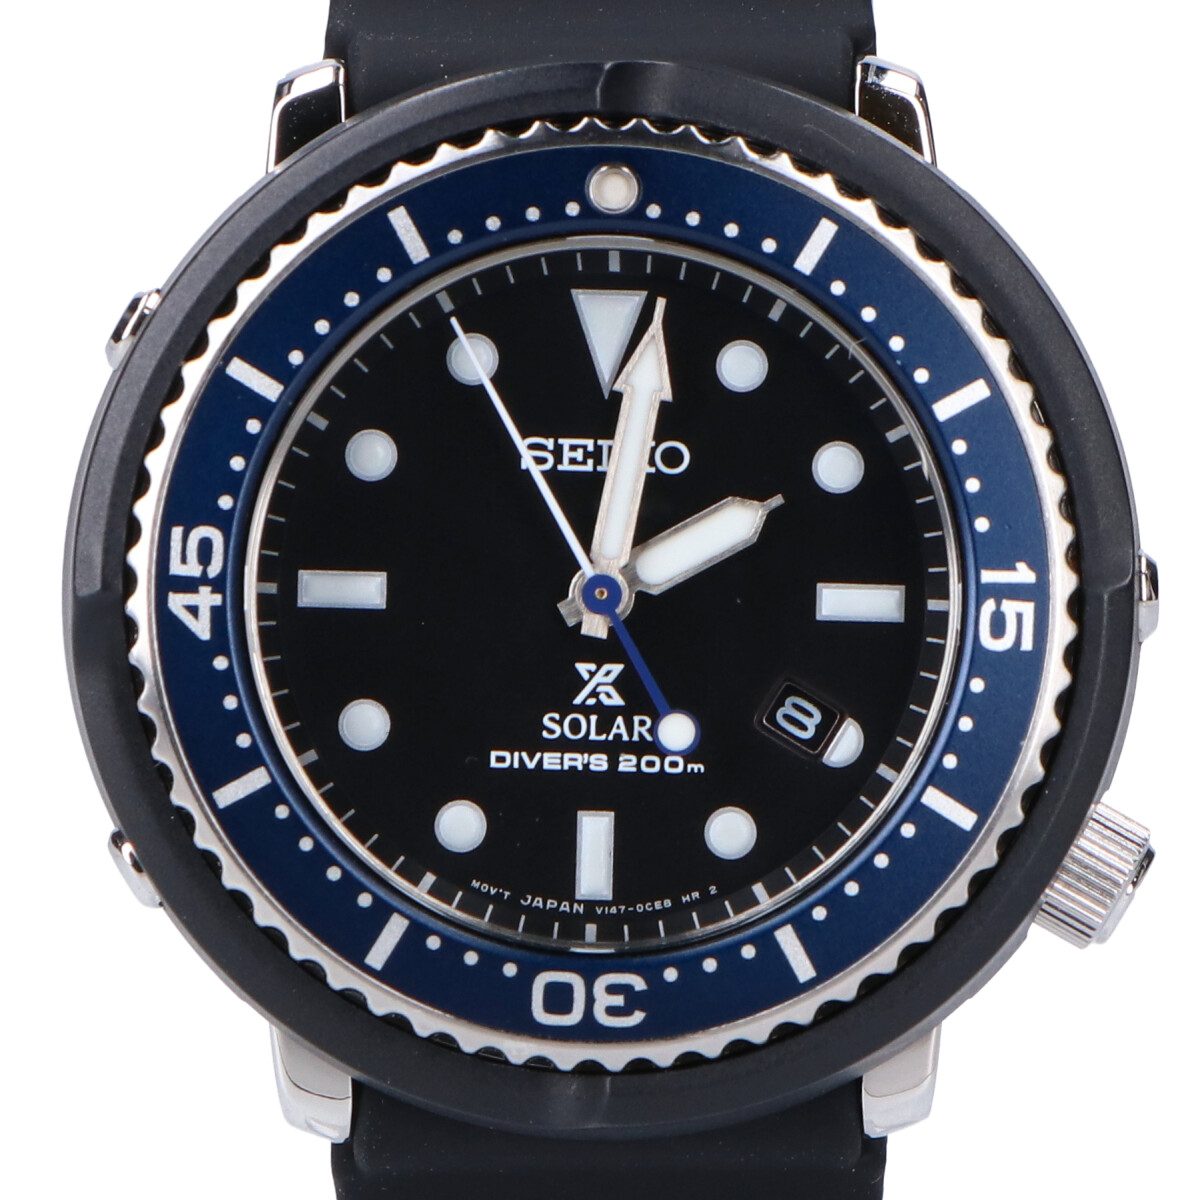 セイコーのエディフィス別注 STBR015 Cal.V147 ダイバースキューバ ソーラー腕時計の買取実績です。